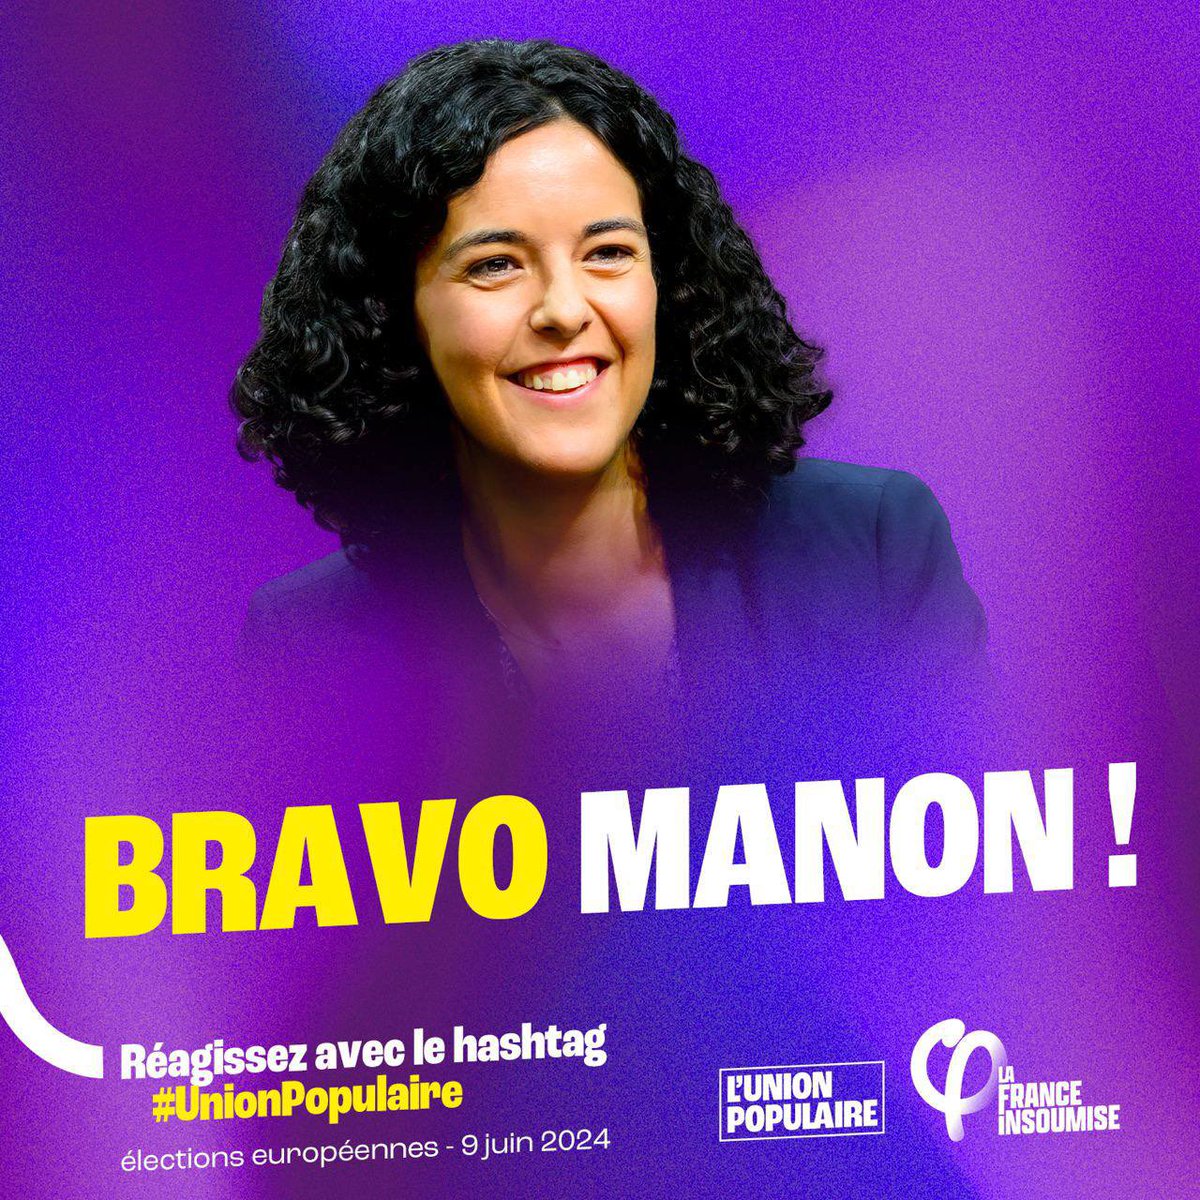 Manon Aubry bien au-dessus des autres candidats dans le débat du #GrandJury !

Ici est là force 🔥

#UnionPopulaire.